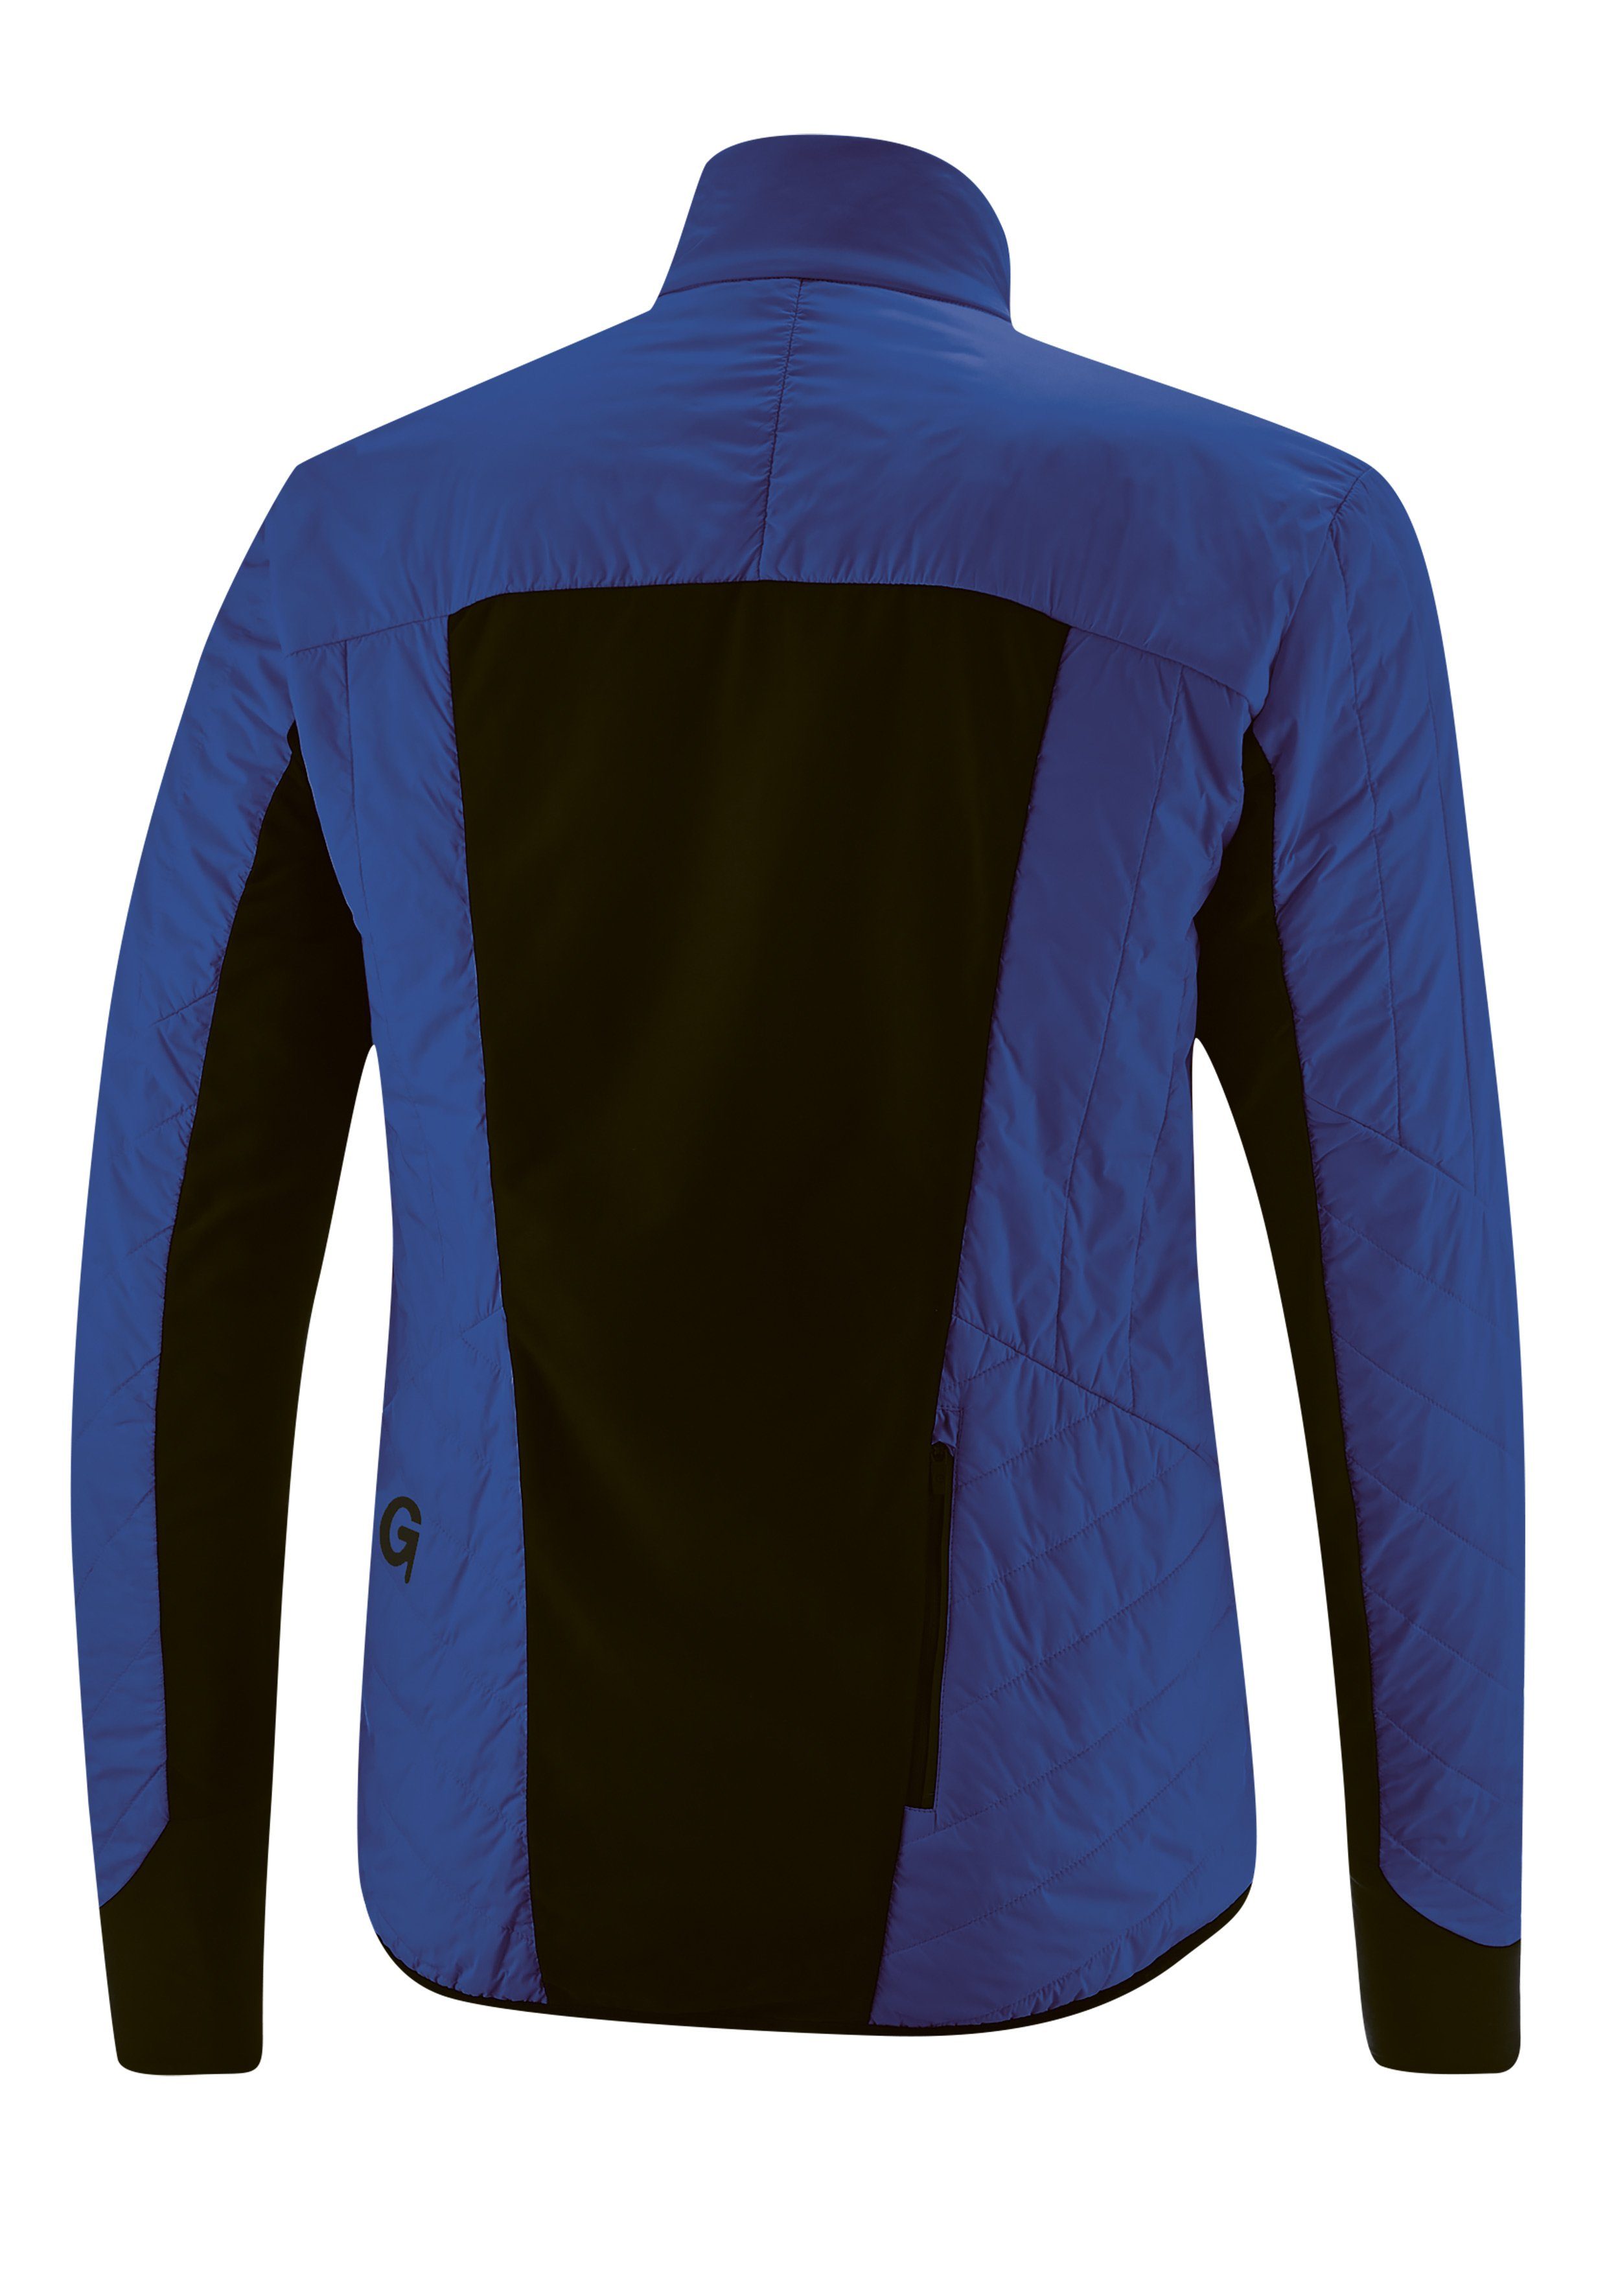 Gonso Fahrradjacke Tomar warm, atmungsaktiv winddicht und kobaltblau Herren Primaloft-Jacke